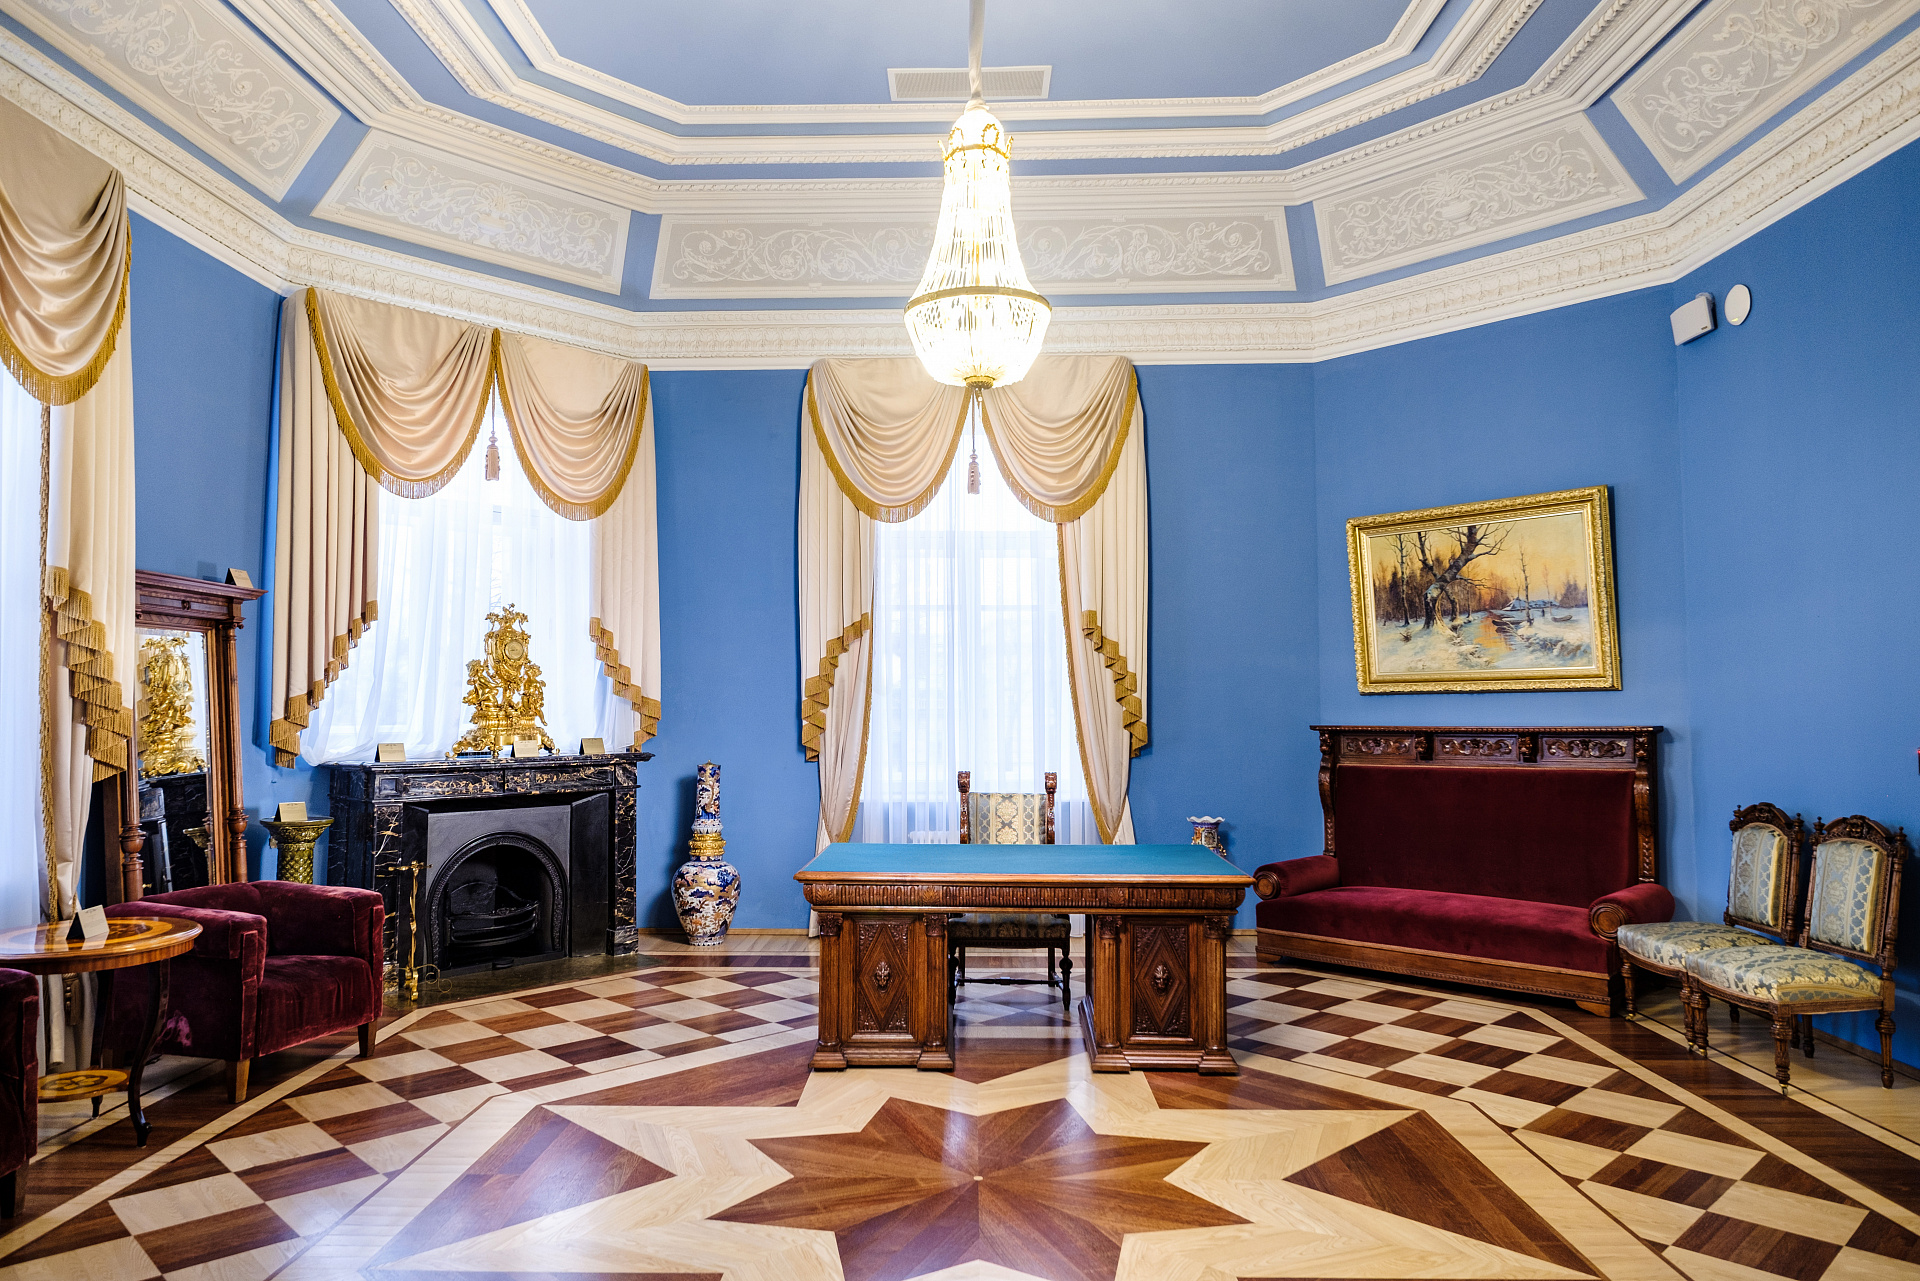 Гостиница «Особняк Военного Министра» (Milutin Palace)